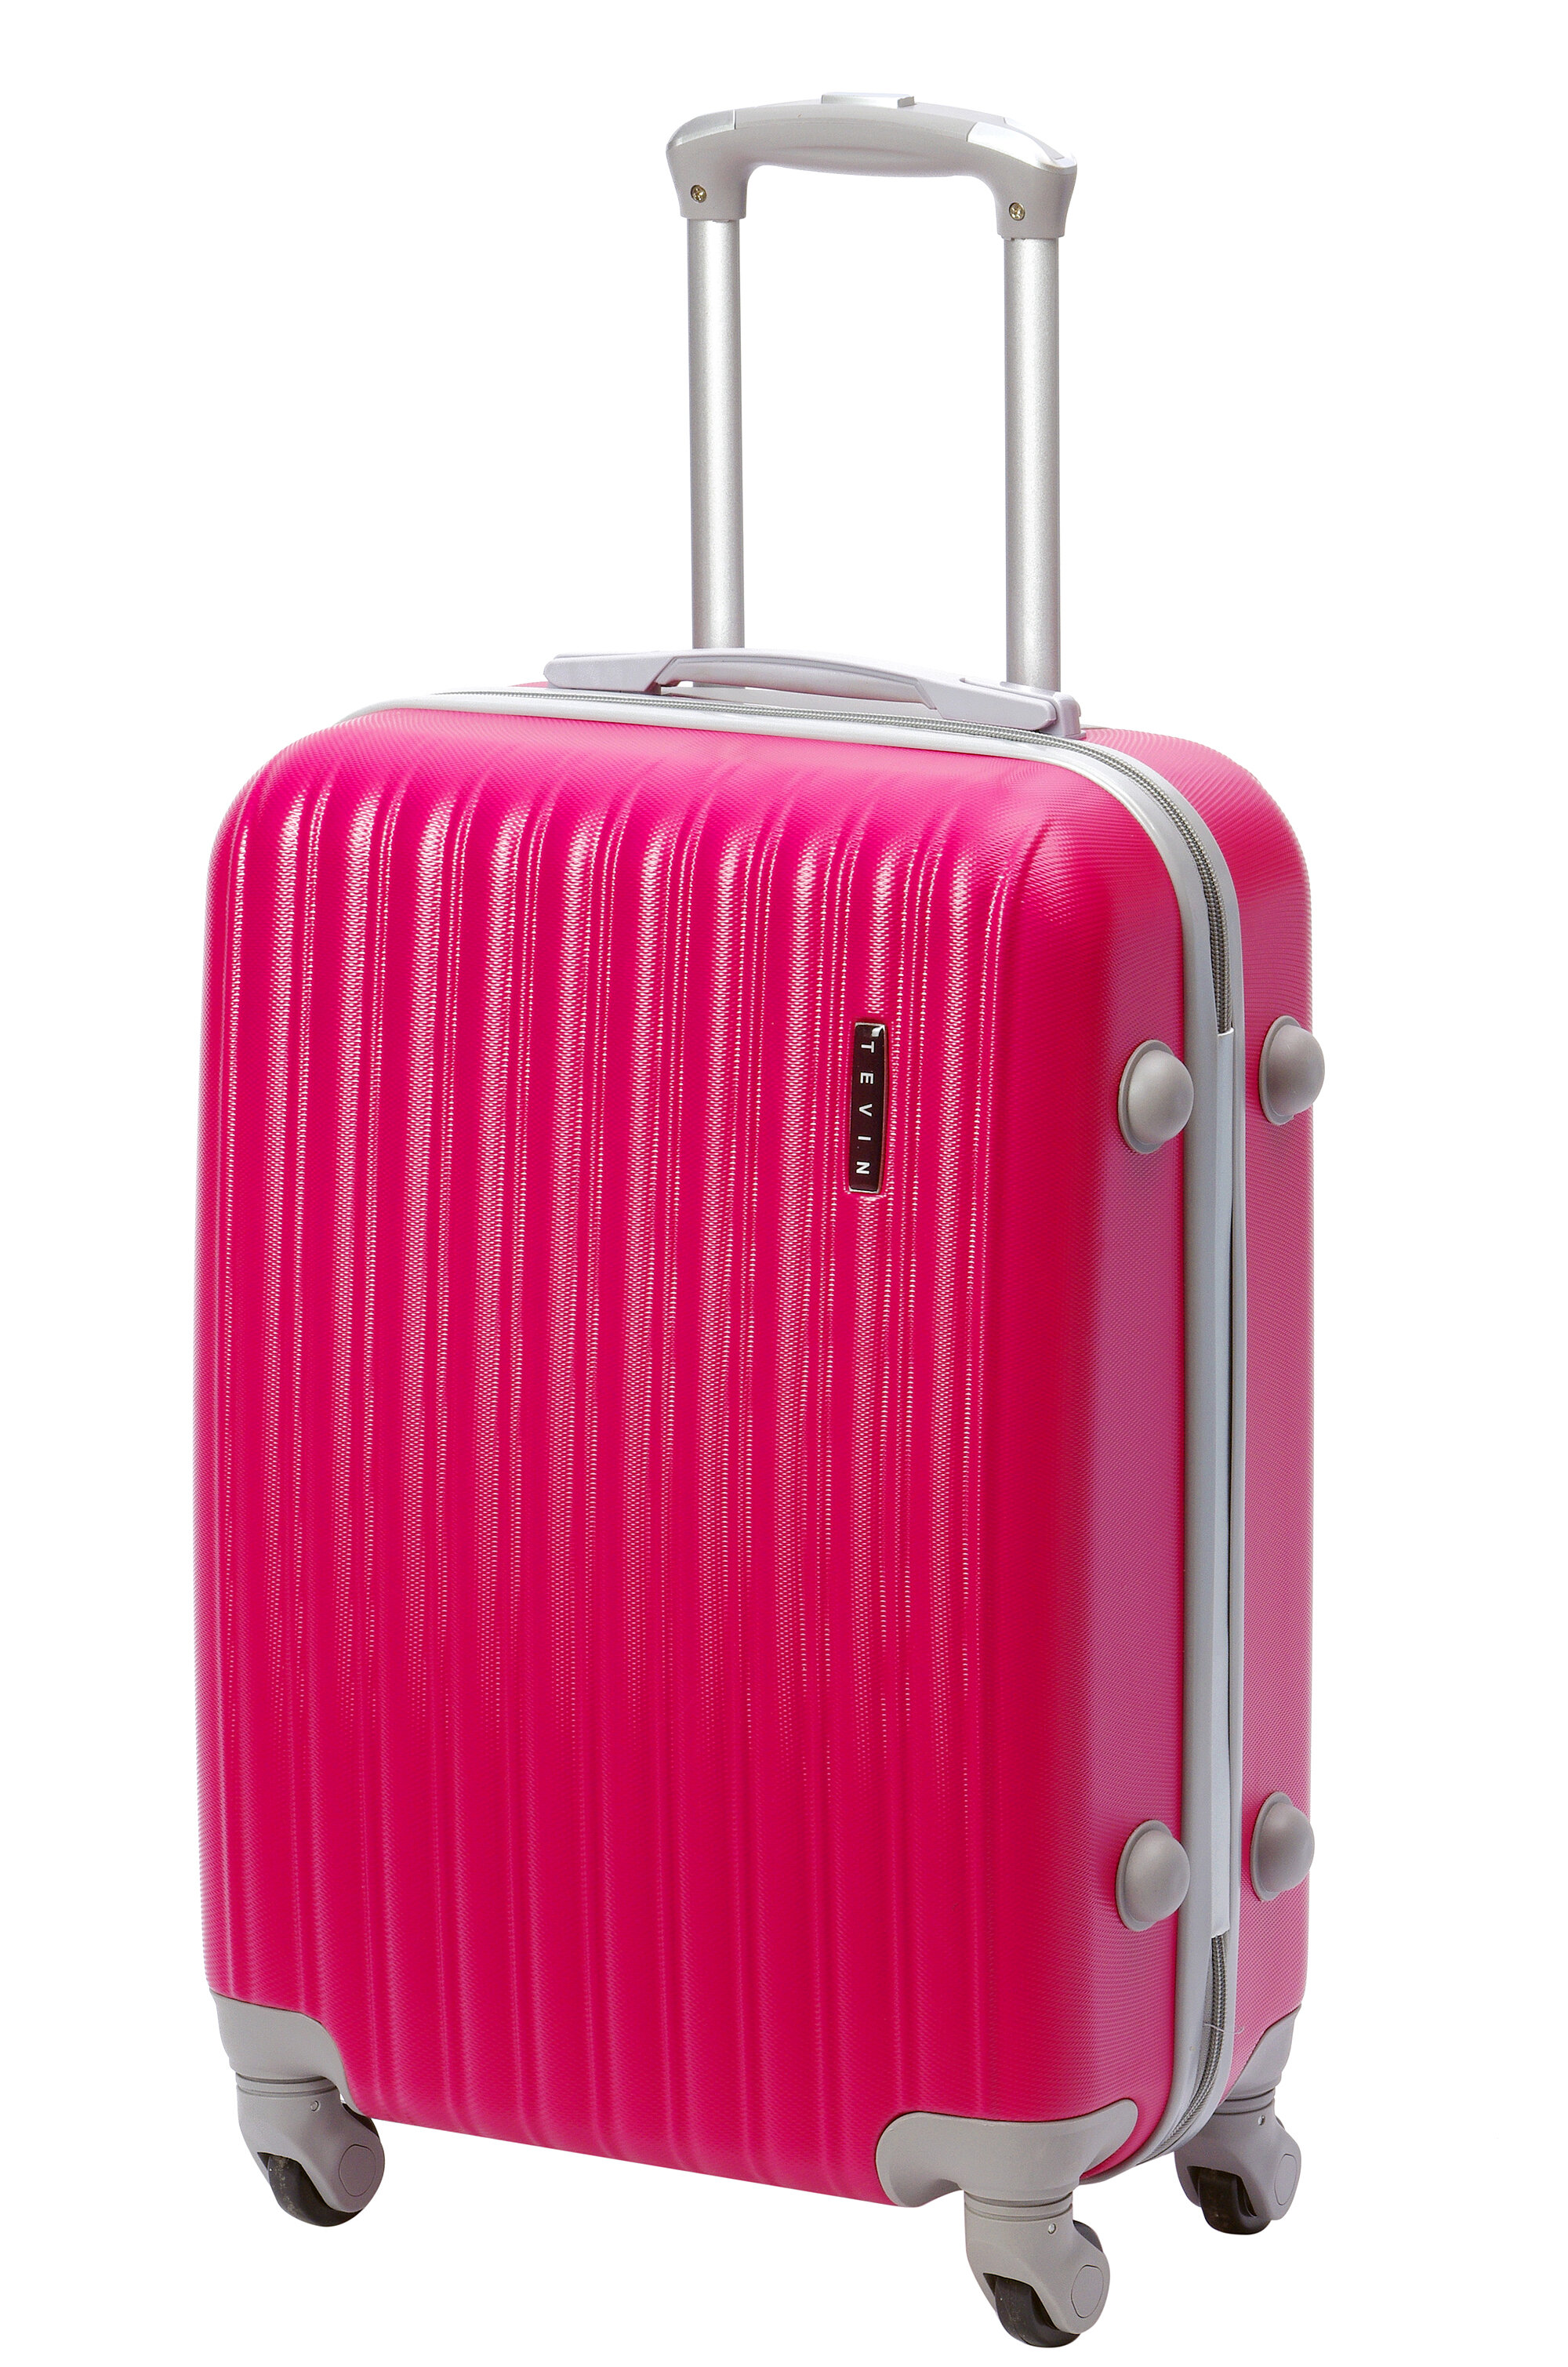 Чемодан на колесах дорожный средний багаж для путешествий женский m TEVIN размер М 64 см 62 л прочный и легкий abs пластик Розовый яркий матовый